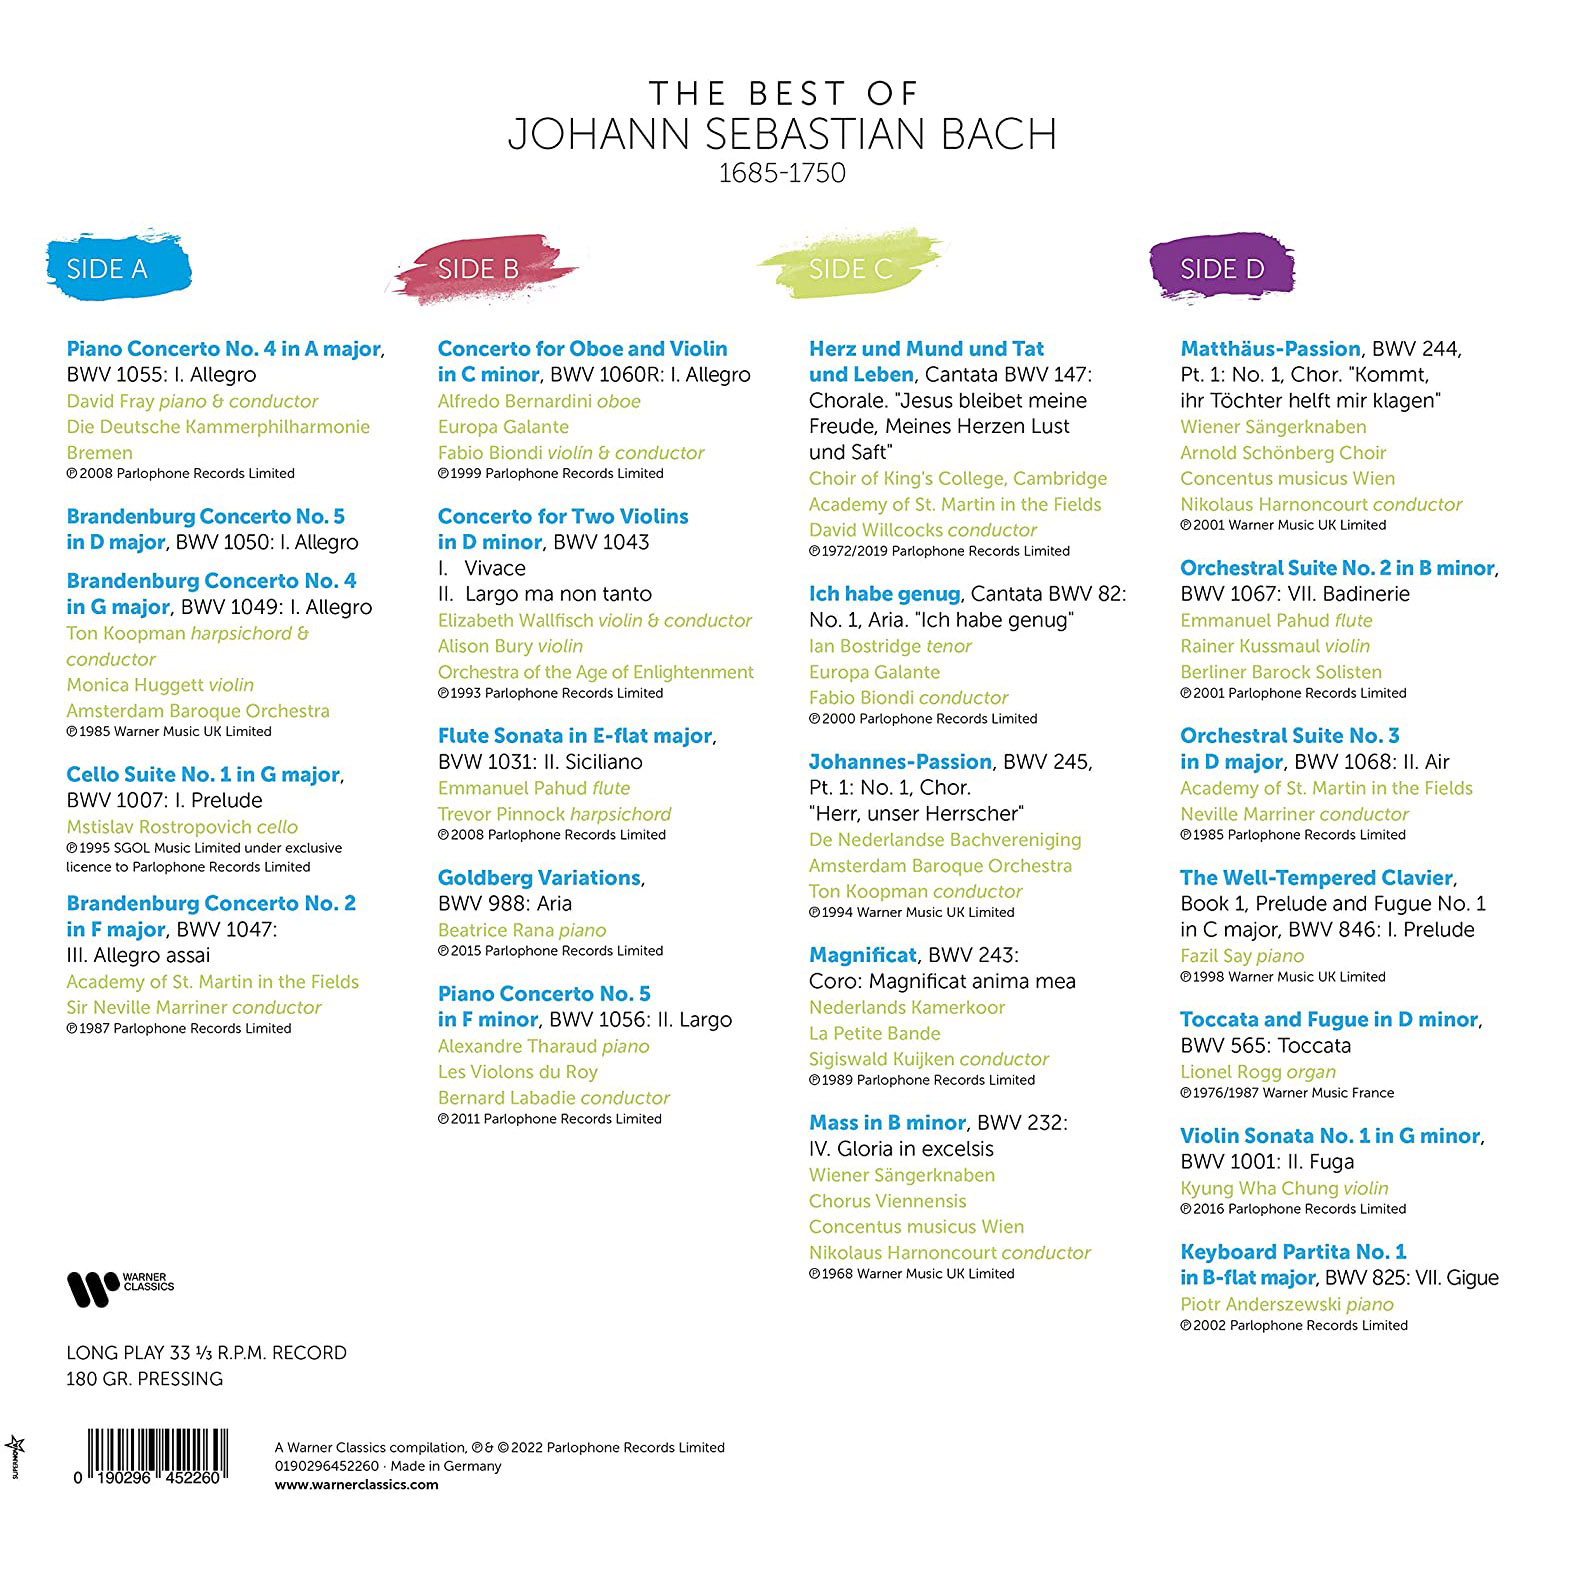 바흐 베스트 모음집 (The Best of Bach) [2LP] 